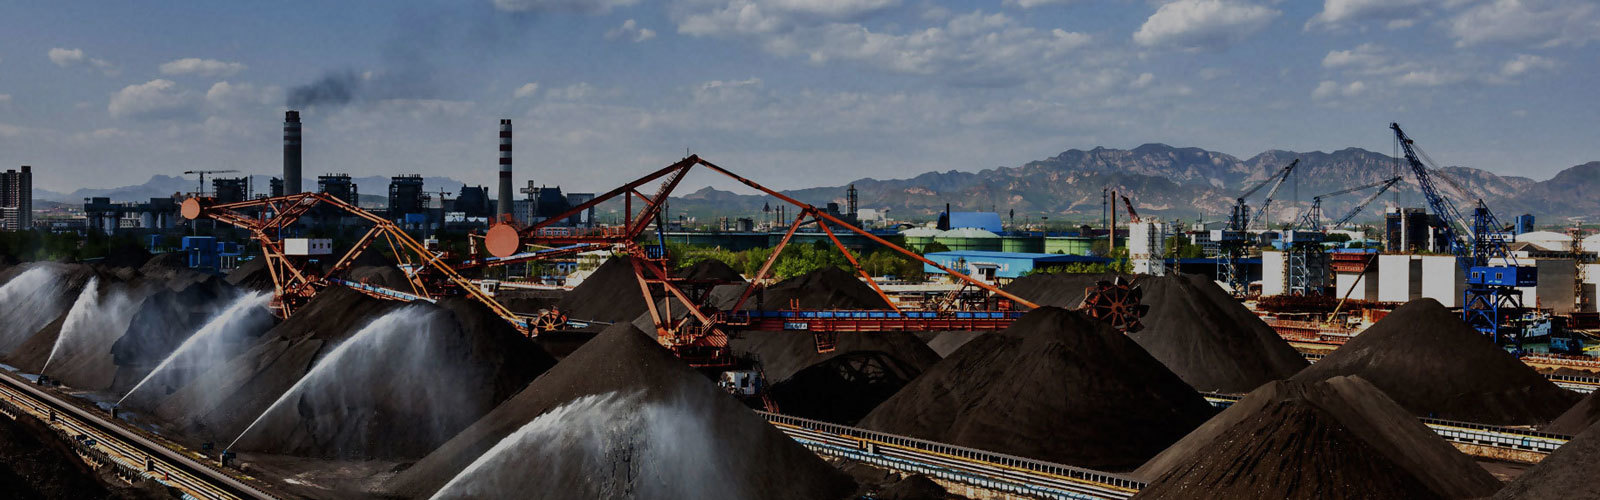 Industria del carbón